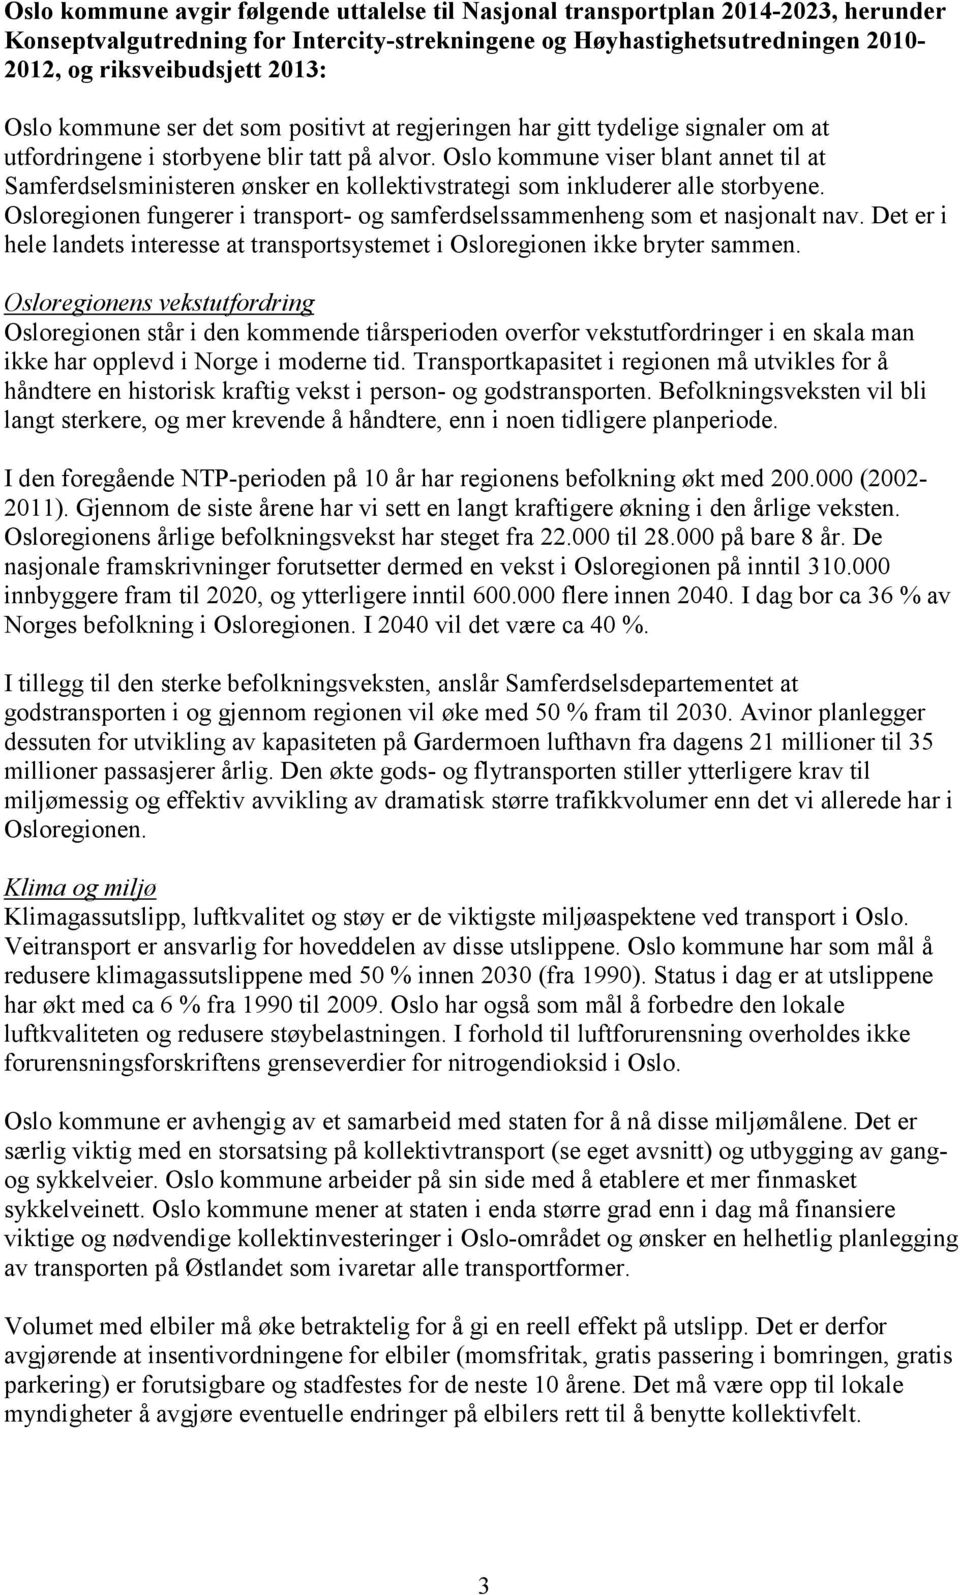 Oslo kommune viser blant annet til at Samferdselsministeren ønsker en kollektivstrategi som inkluderer alle storbyene. Osloregionen fungerer i transport- og samferdselssammenheng som et nasjonalt nav.